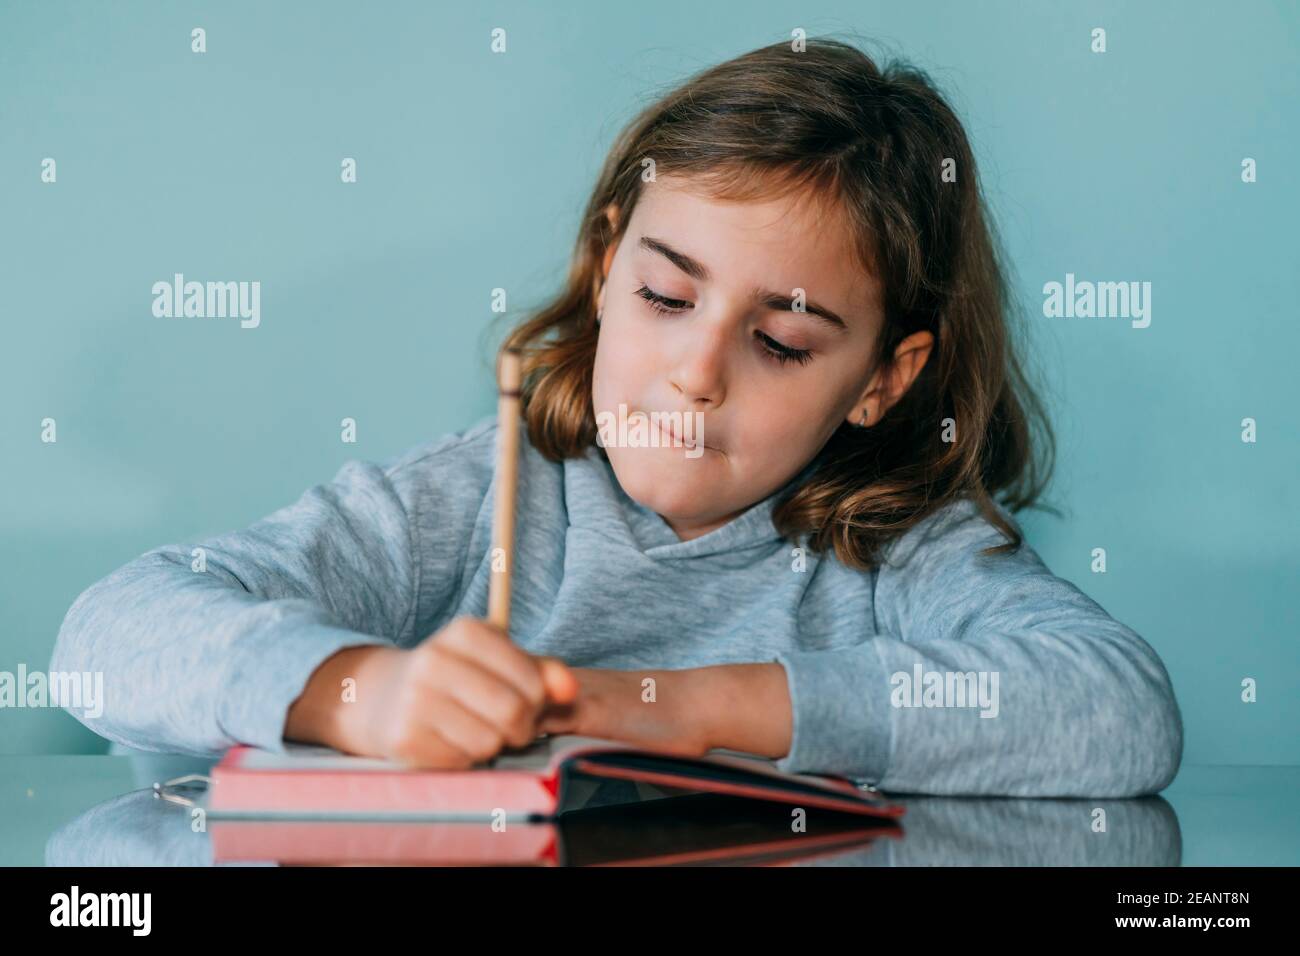 Liebenswert kleines Mädchen schreibt in einem Notizbuch, hat eine nachdenkliche und lustige Geste. Horizontales Foto Stockfoto